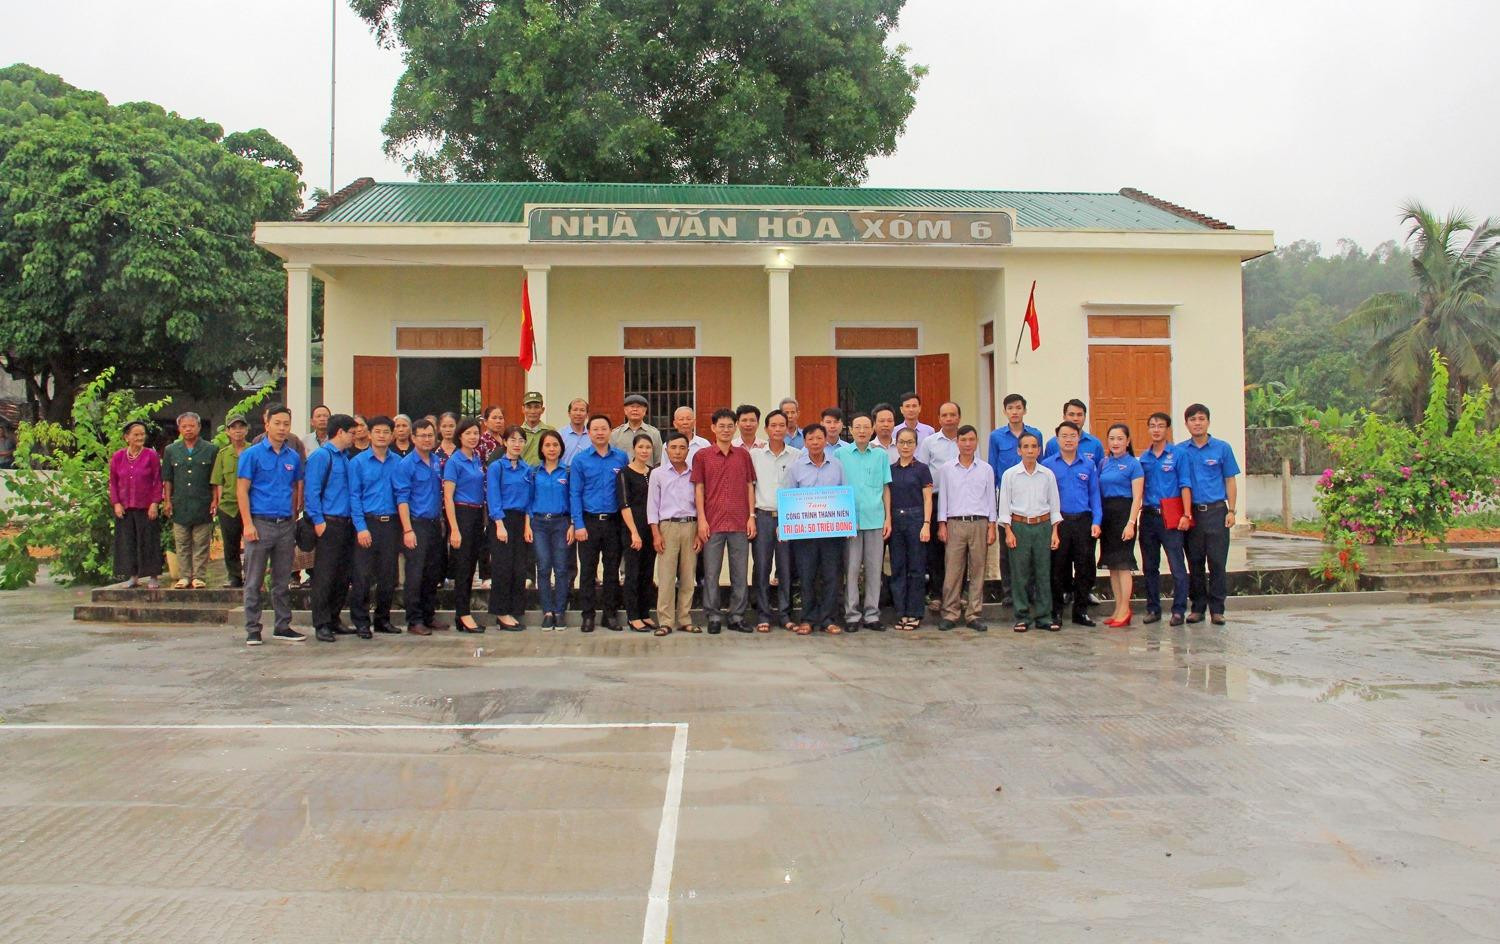 Bàn giao công trình thanh niên của đoàn Khối các cơ quan - doanh nghiệp tại xóm 6 (Quang Sơn, Đô Lương). Ảnh Thanh Quỳnh